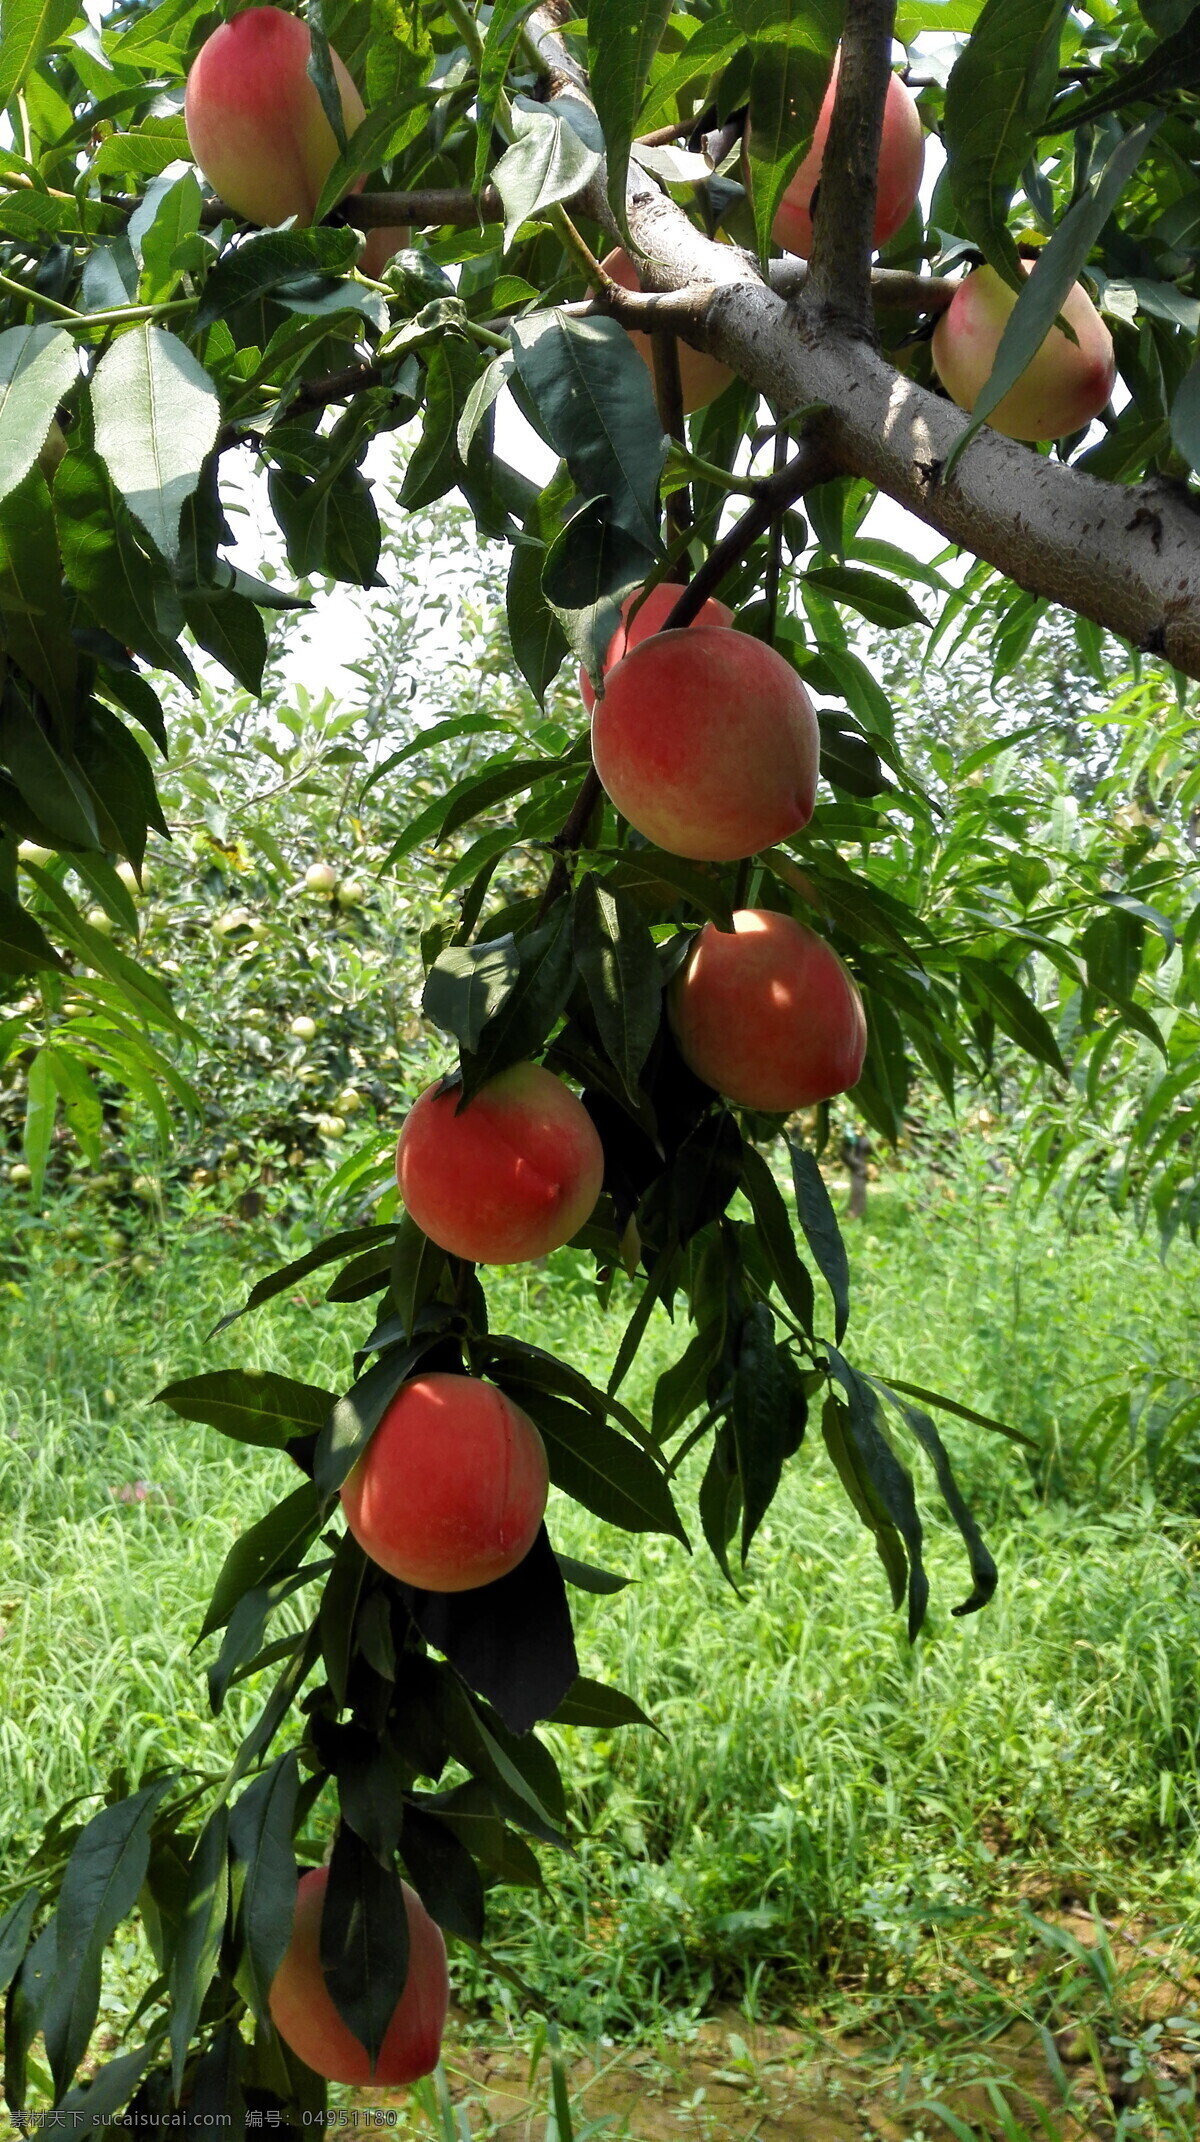 硕果累累 水蜜桃 桃子 红桃子 好吃的桃子 桃园 自然景观 山水风景